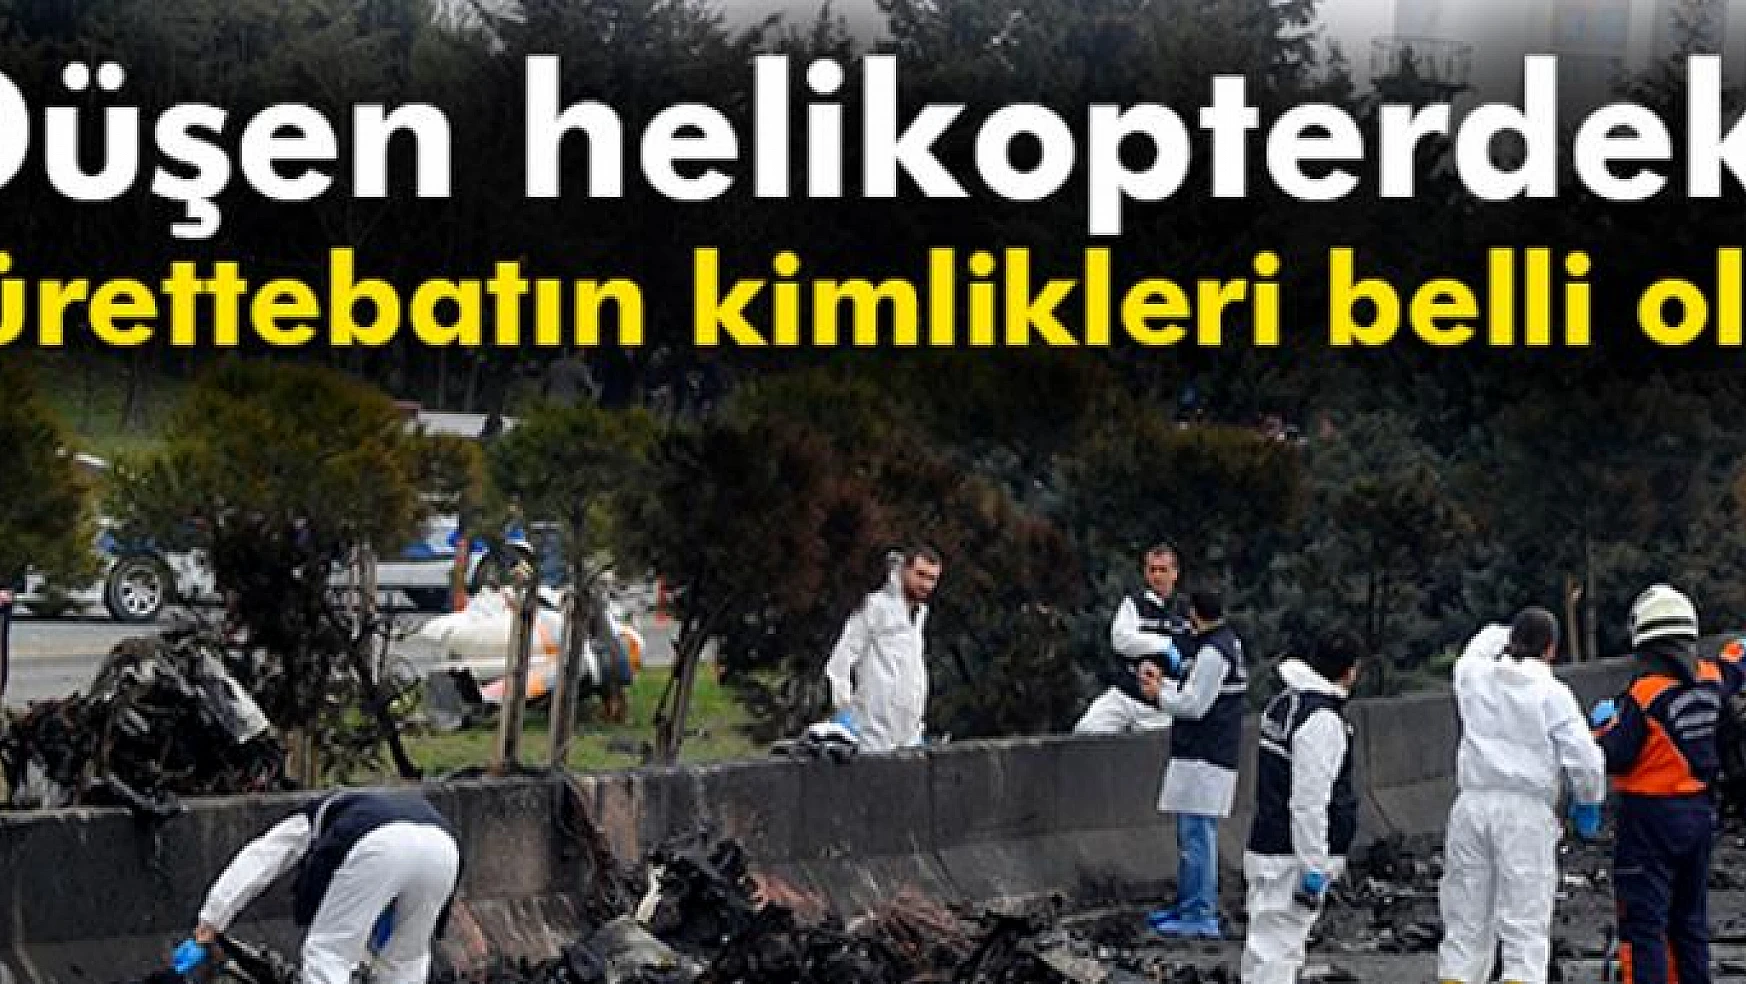 Son dakika: İstanbul Büyükçekmece'de düşen helikopterdeki mürettebatın kimlikleri belirlendi